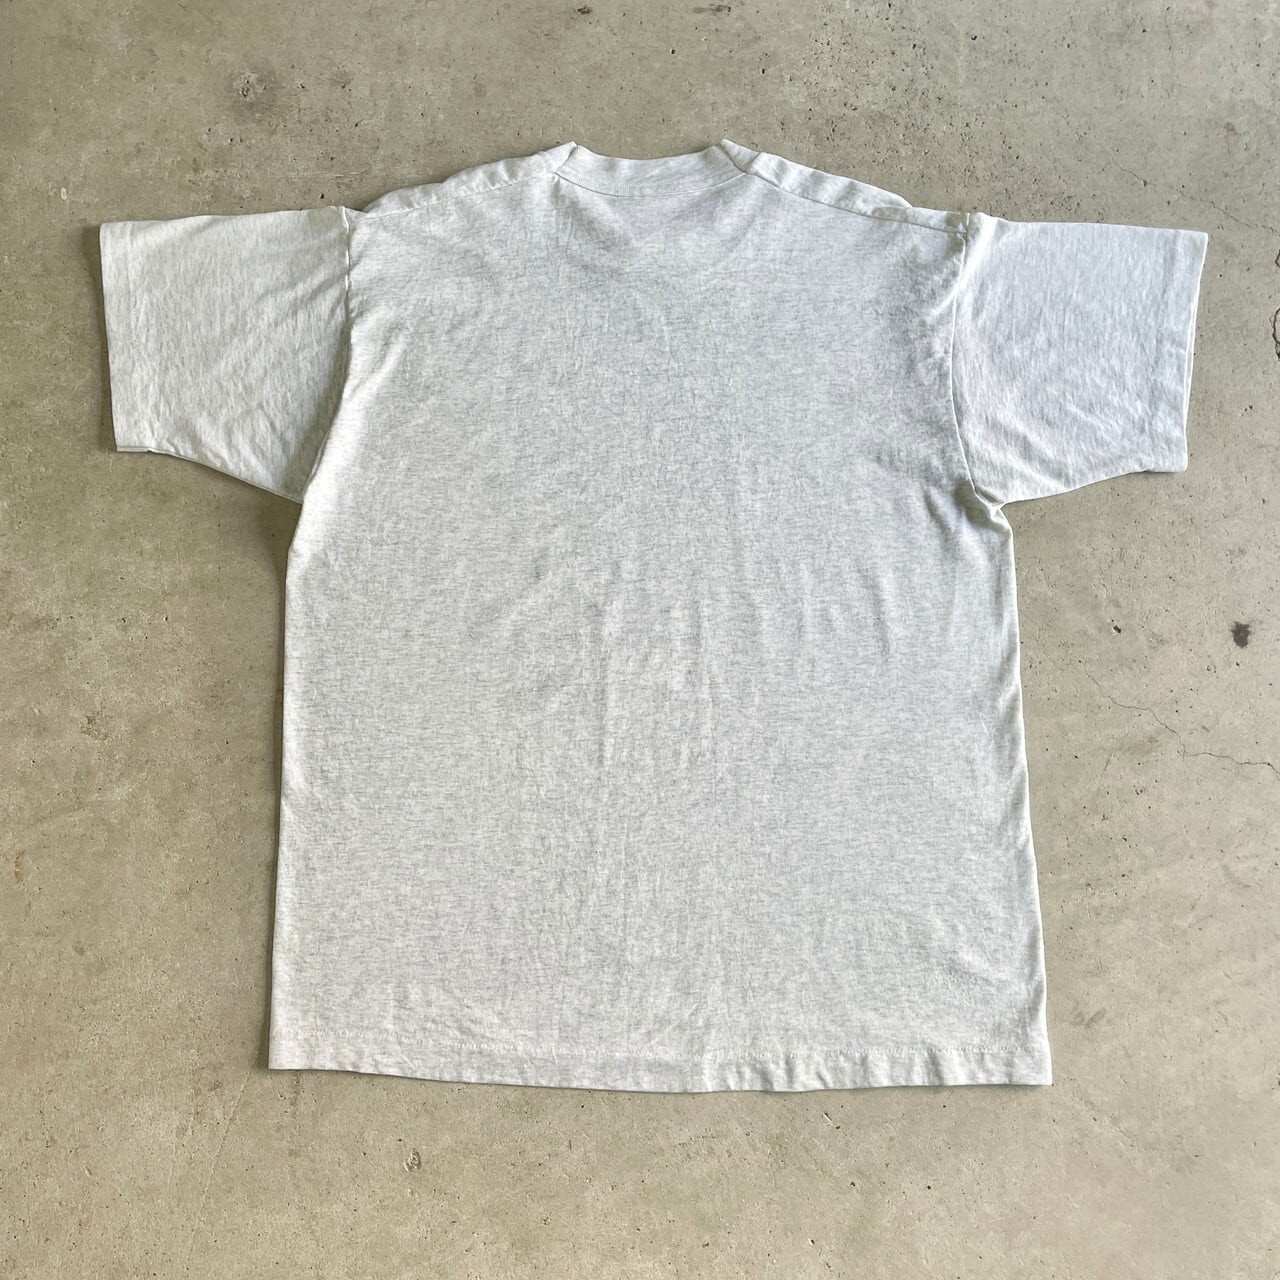 90s 【USA 製】サンフランシスコ　アートプリントTシャツ Breakers